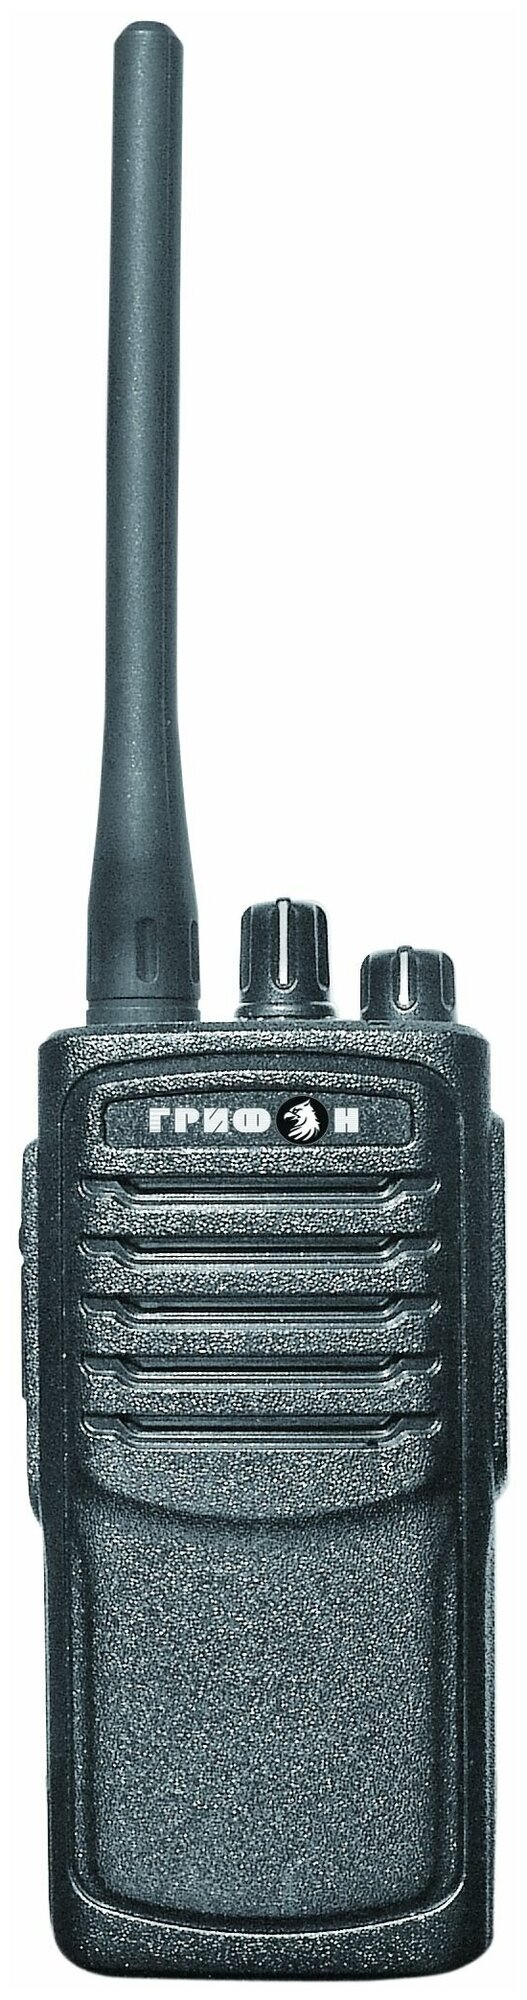 Радиостанция портативная грифон G-34